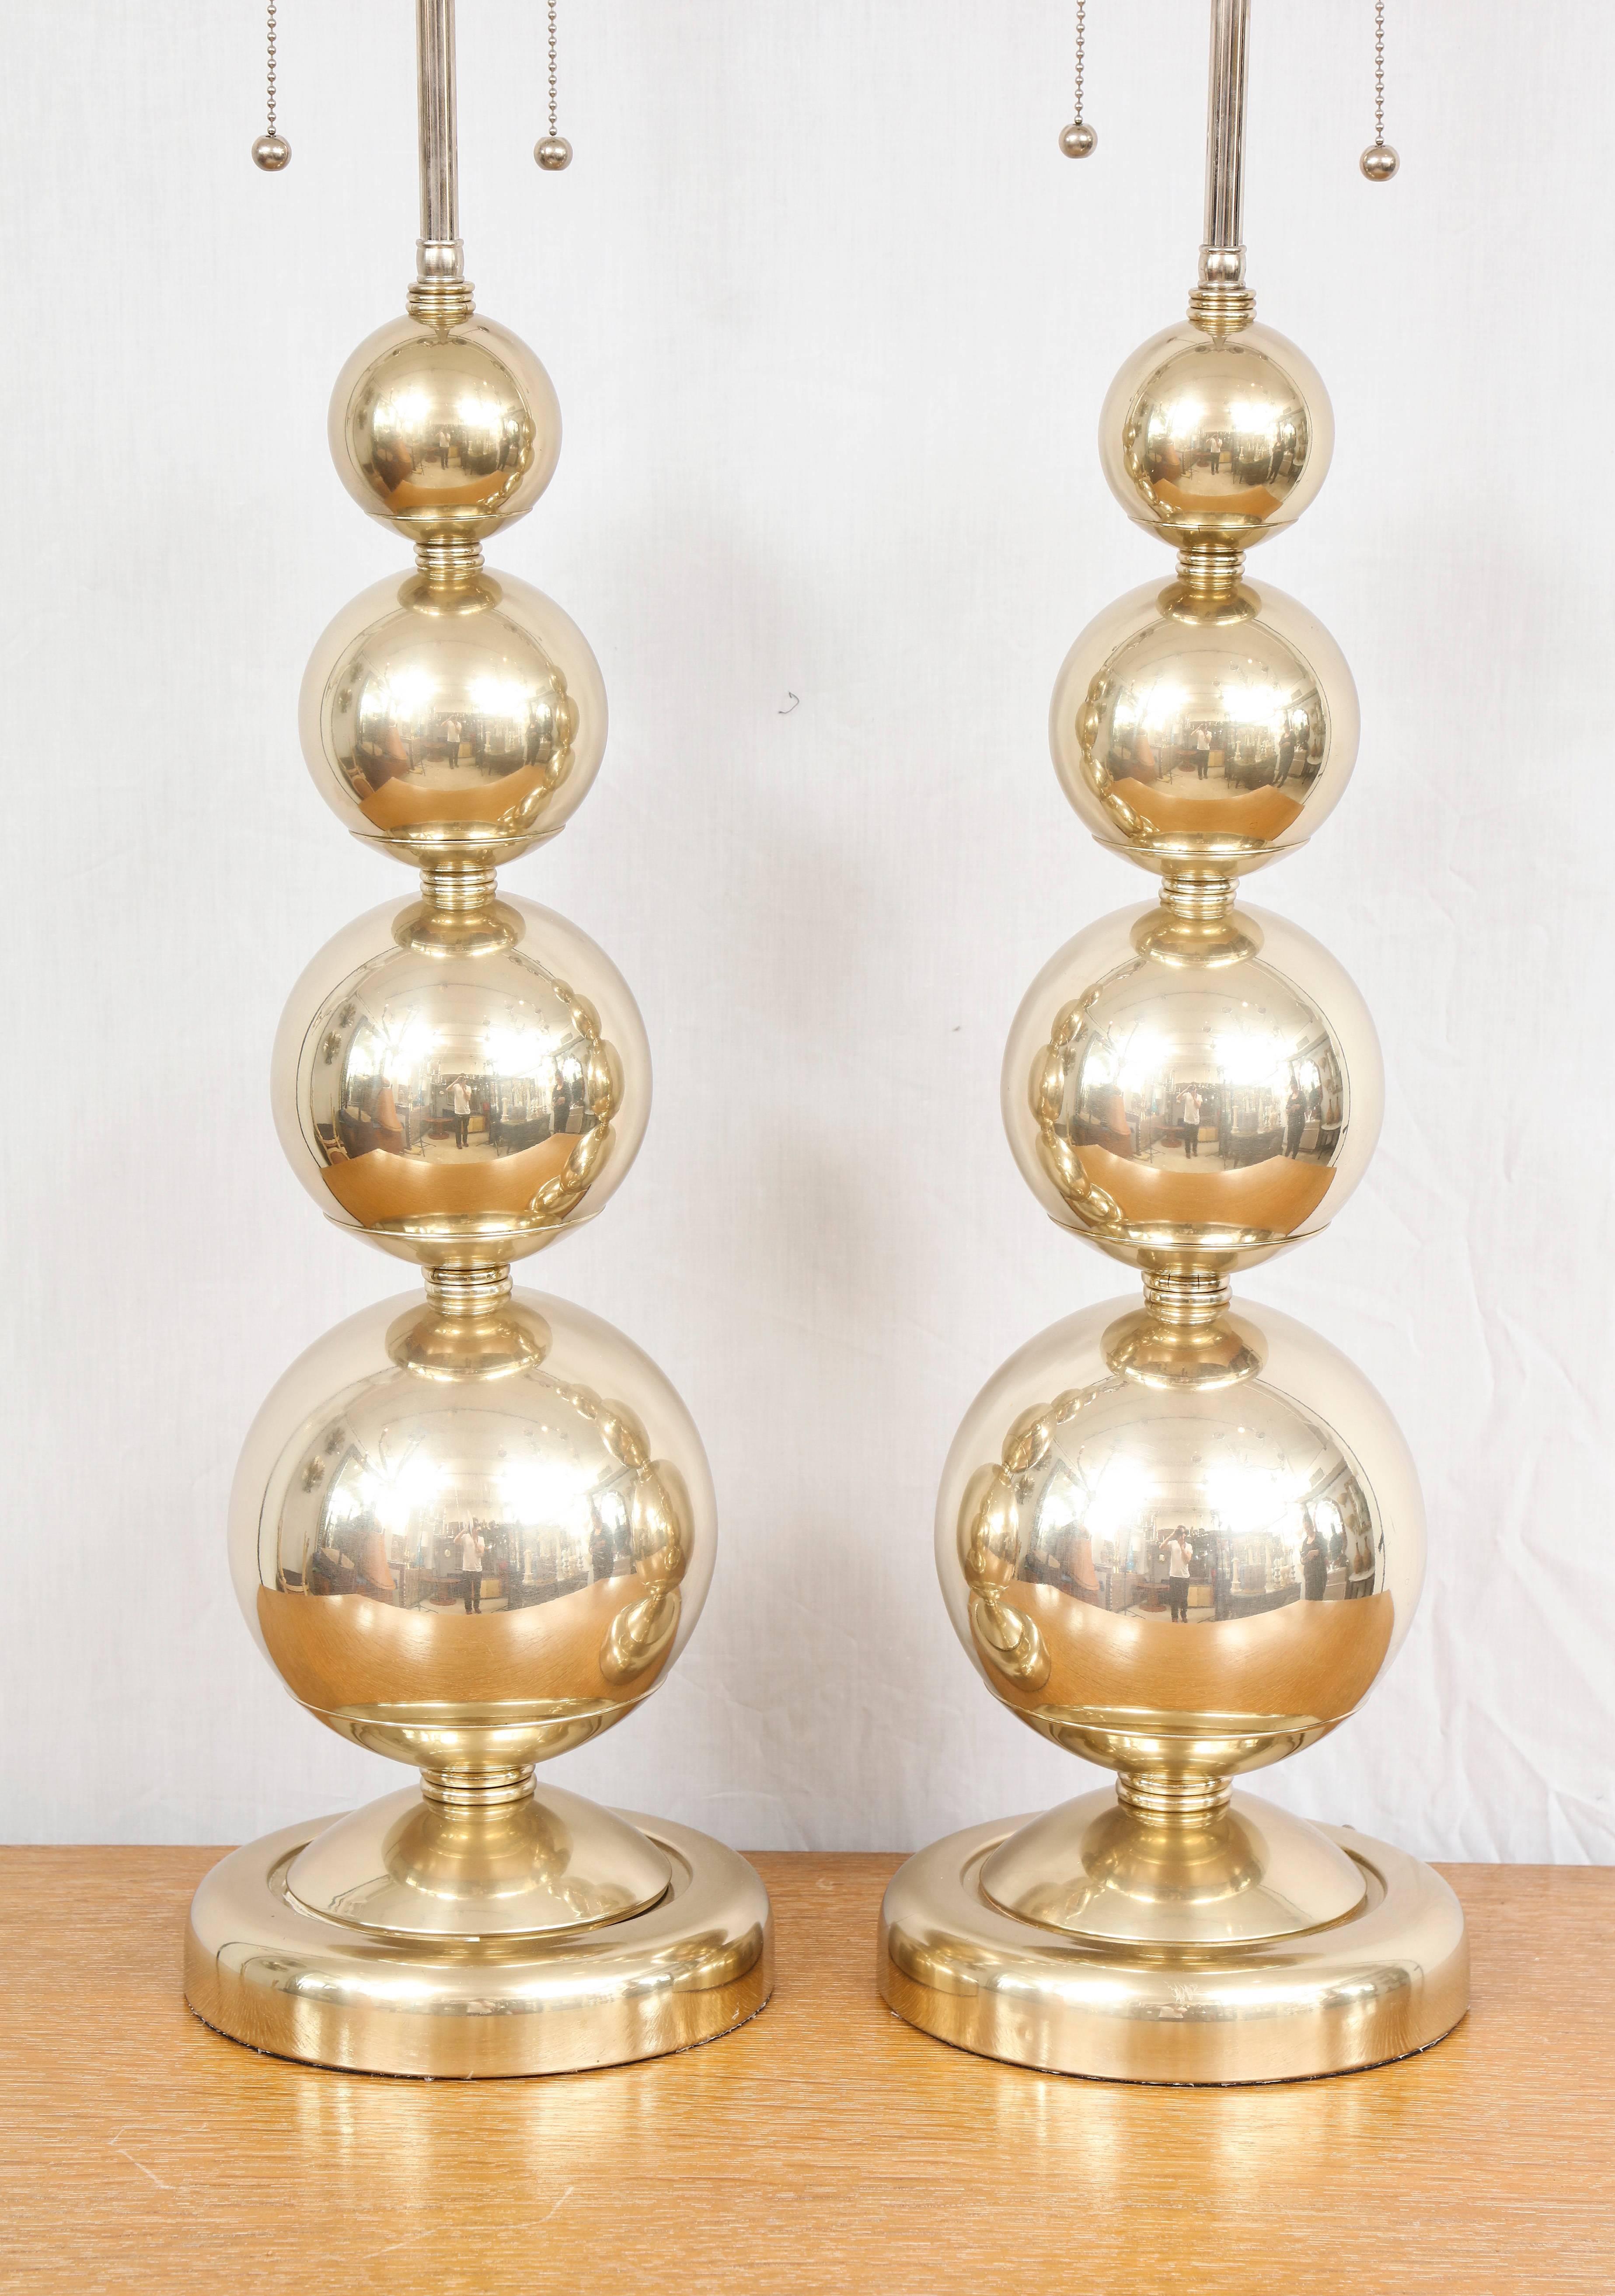 American Pair of Midcentury Polished Nickel Spherical Lamps